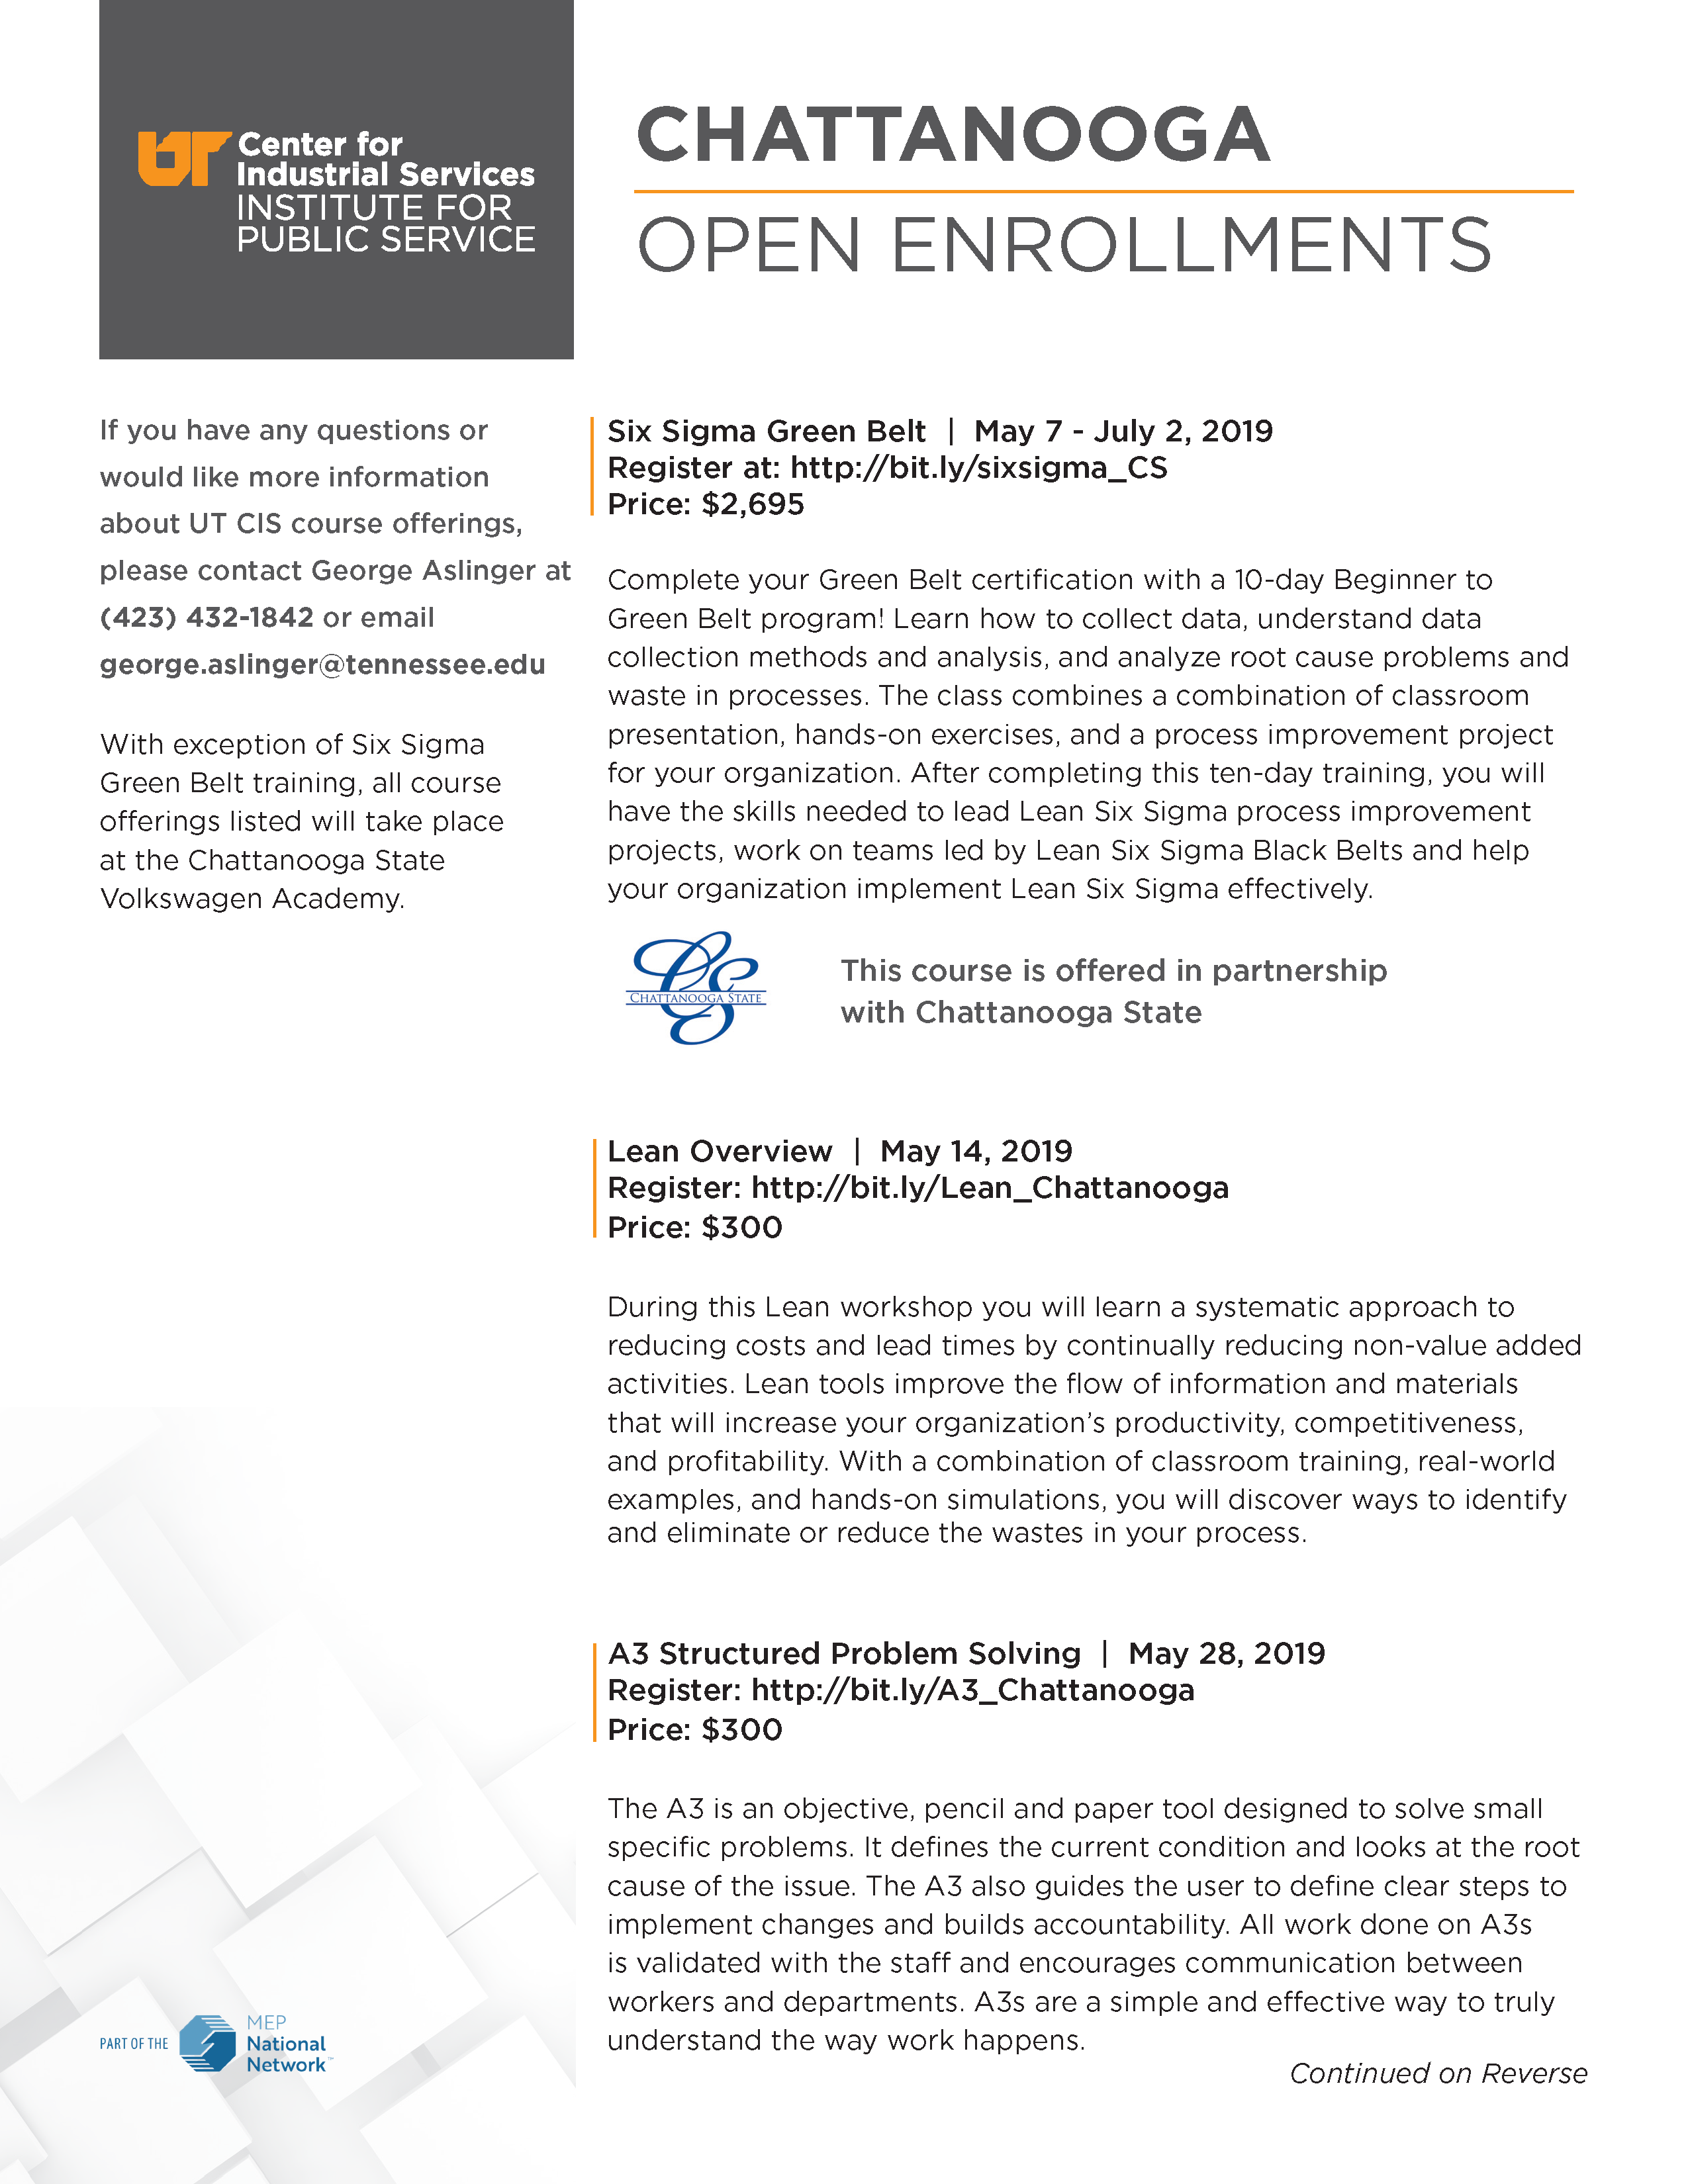 Open Enrollment Chattanooga UT CIS